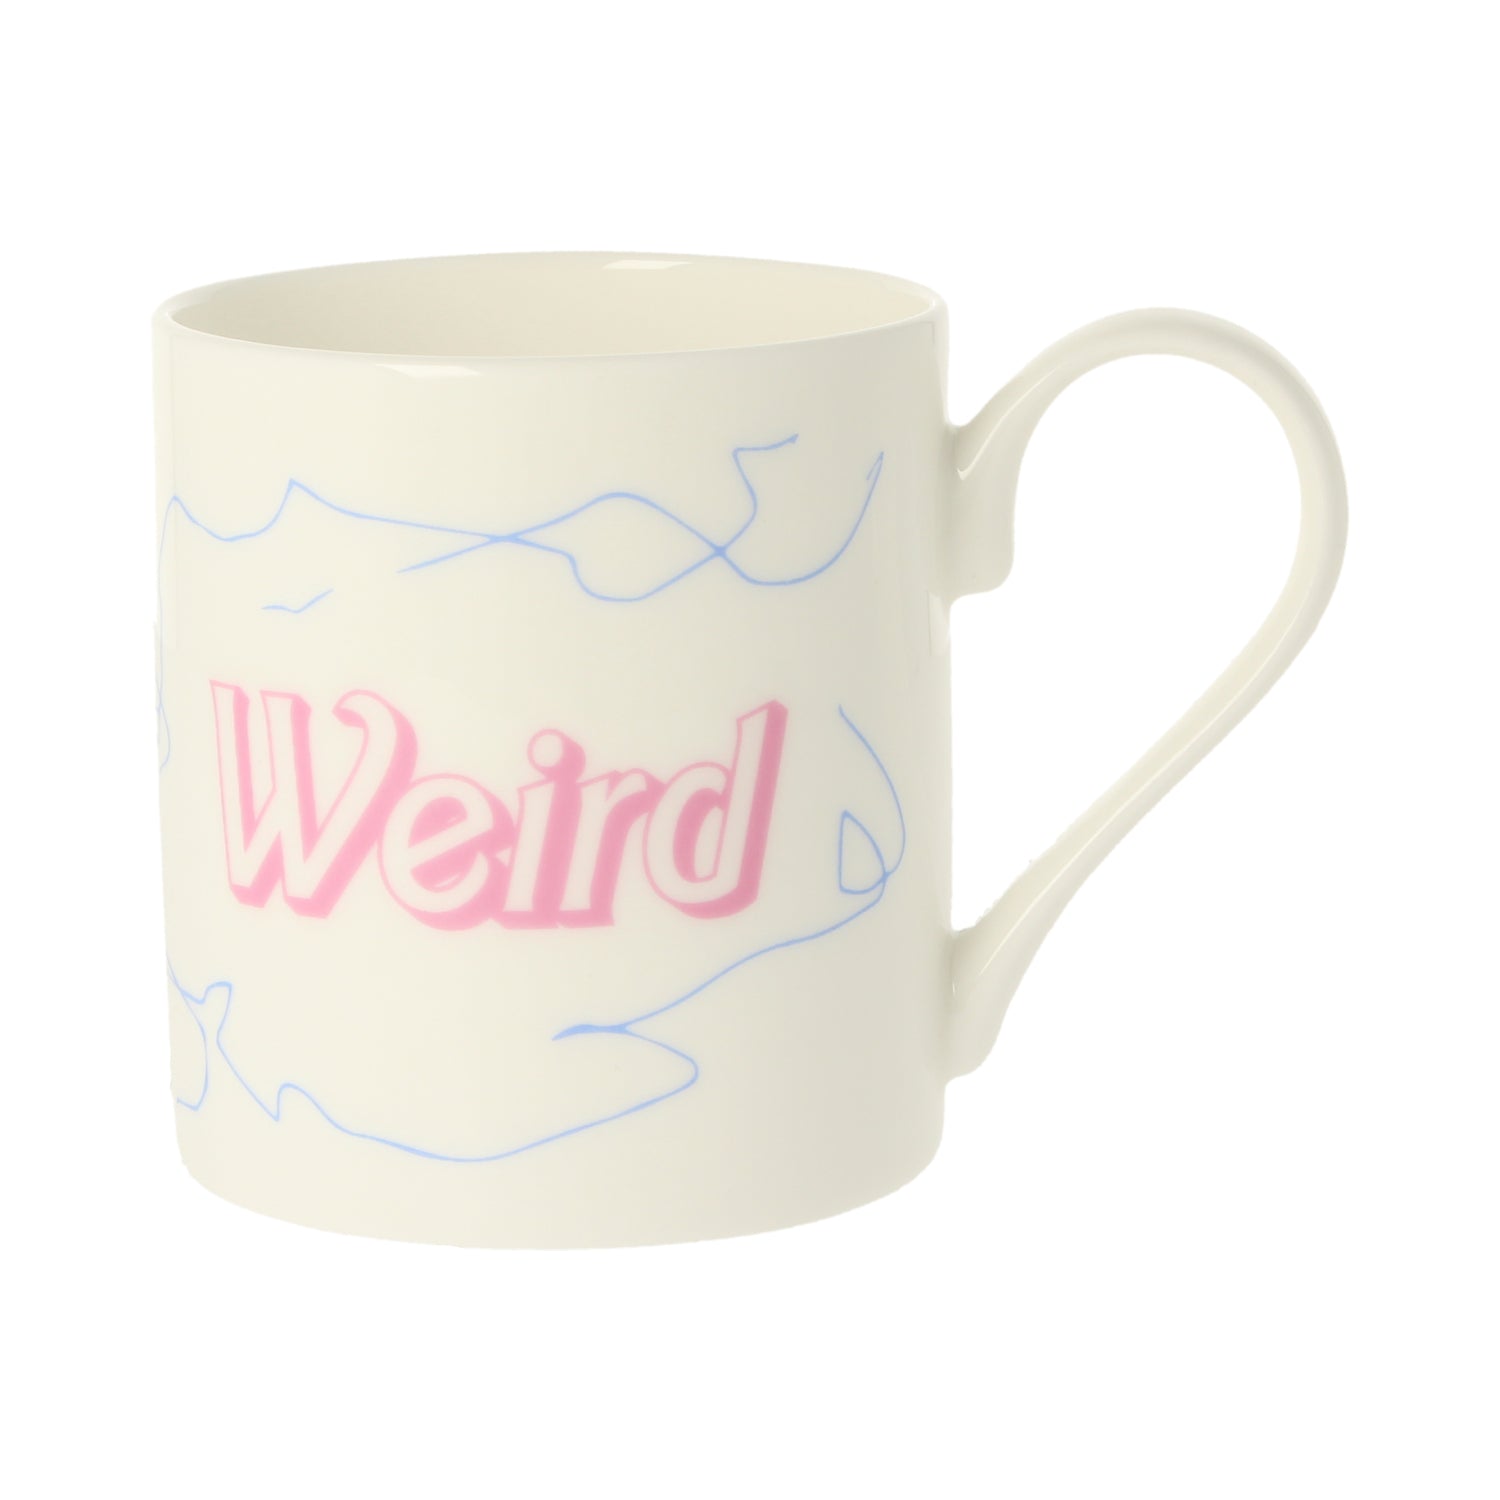 Weird Mug